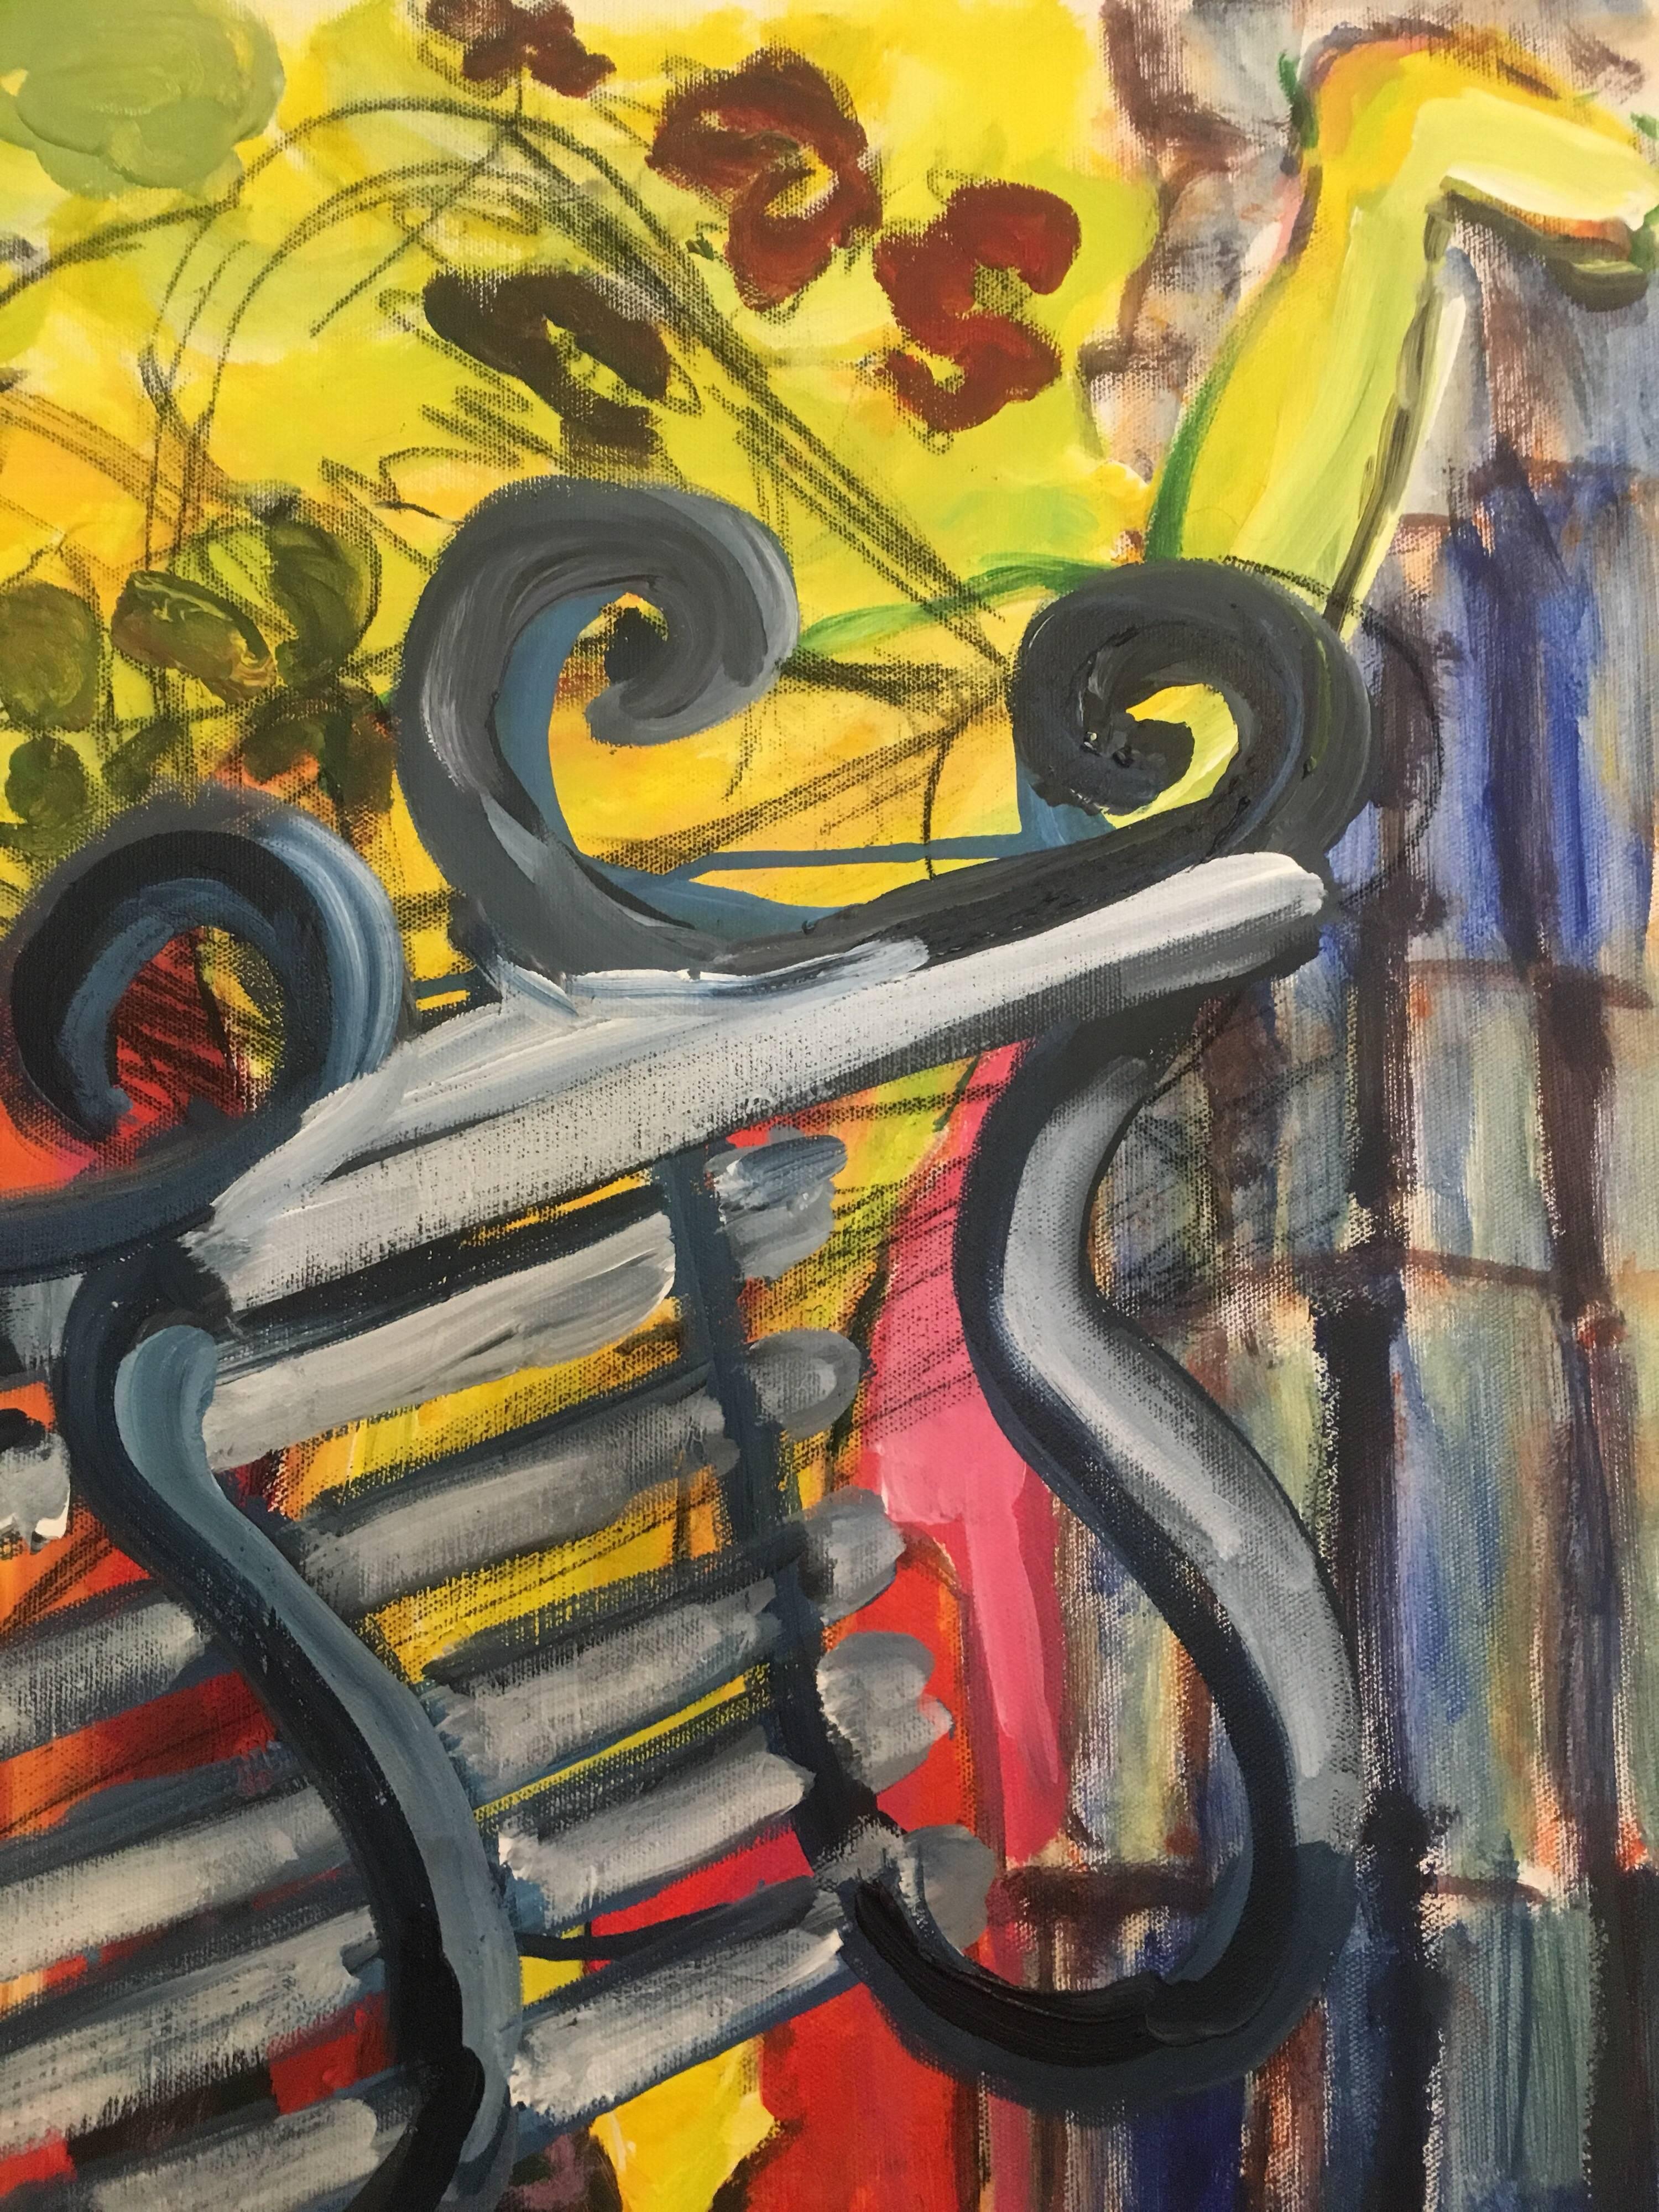 Abstrakter Impressionist Großes Ölgemälde, britischer Künstler
von Pamela Cawley, Britin, 20. Jahrhundert
ölgemälde auf Leinwand, ungerahmt

leinwand: 20 x 20 Zoll 

Beeindruckendes originales impressionistisches Ölgemälde der britischen Künstlerin